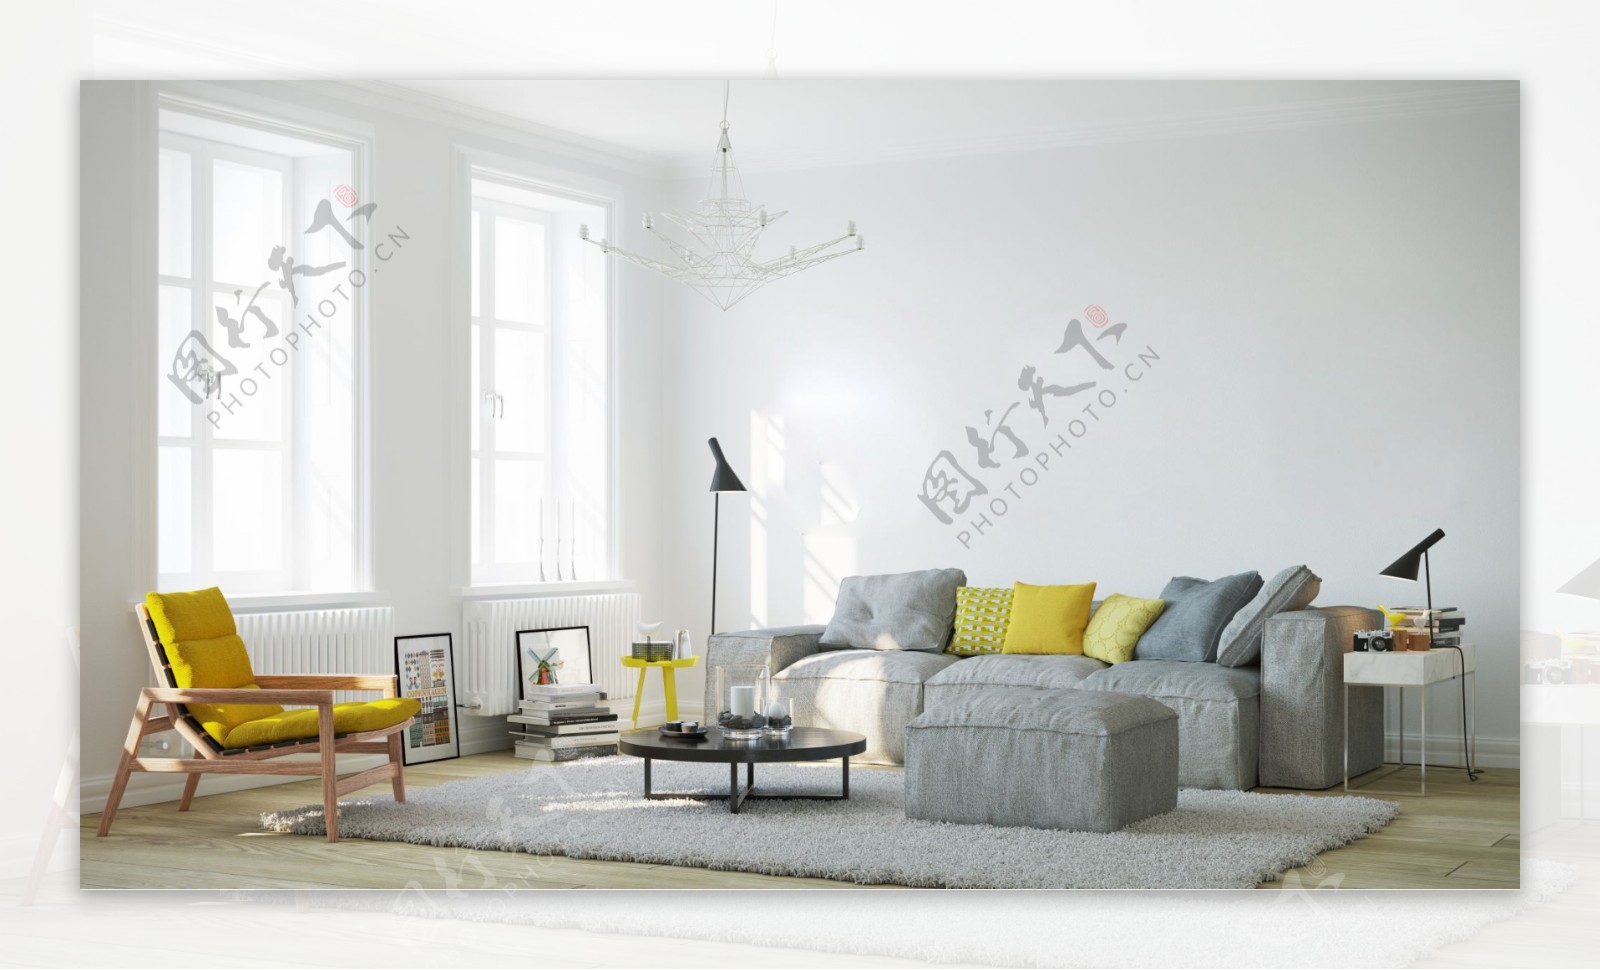 橙色抱枕灰色沙发室内设计时尚家居简约客厅效果图